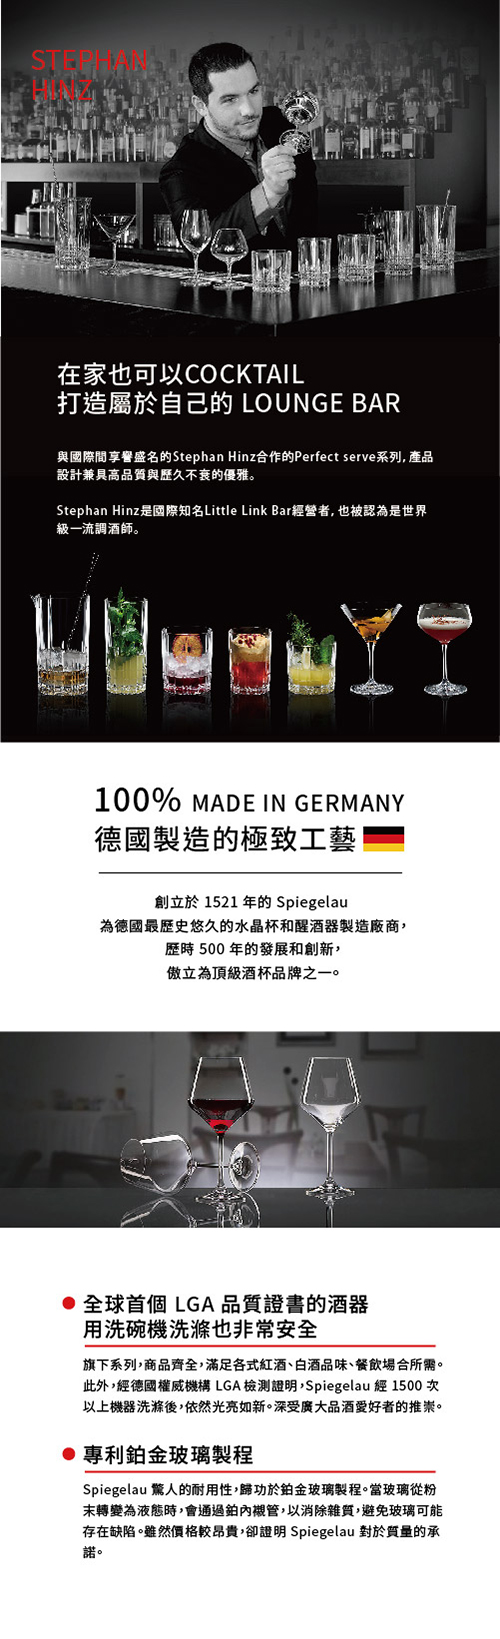 【4/20~4/26精選品牌8折優惠】德國Spiegelau Perfect Serve 完美系列 威士忌4件酒杯組